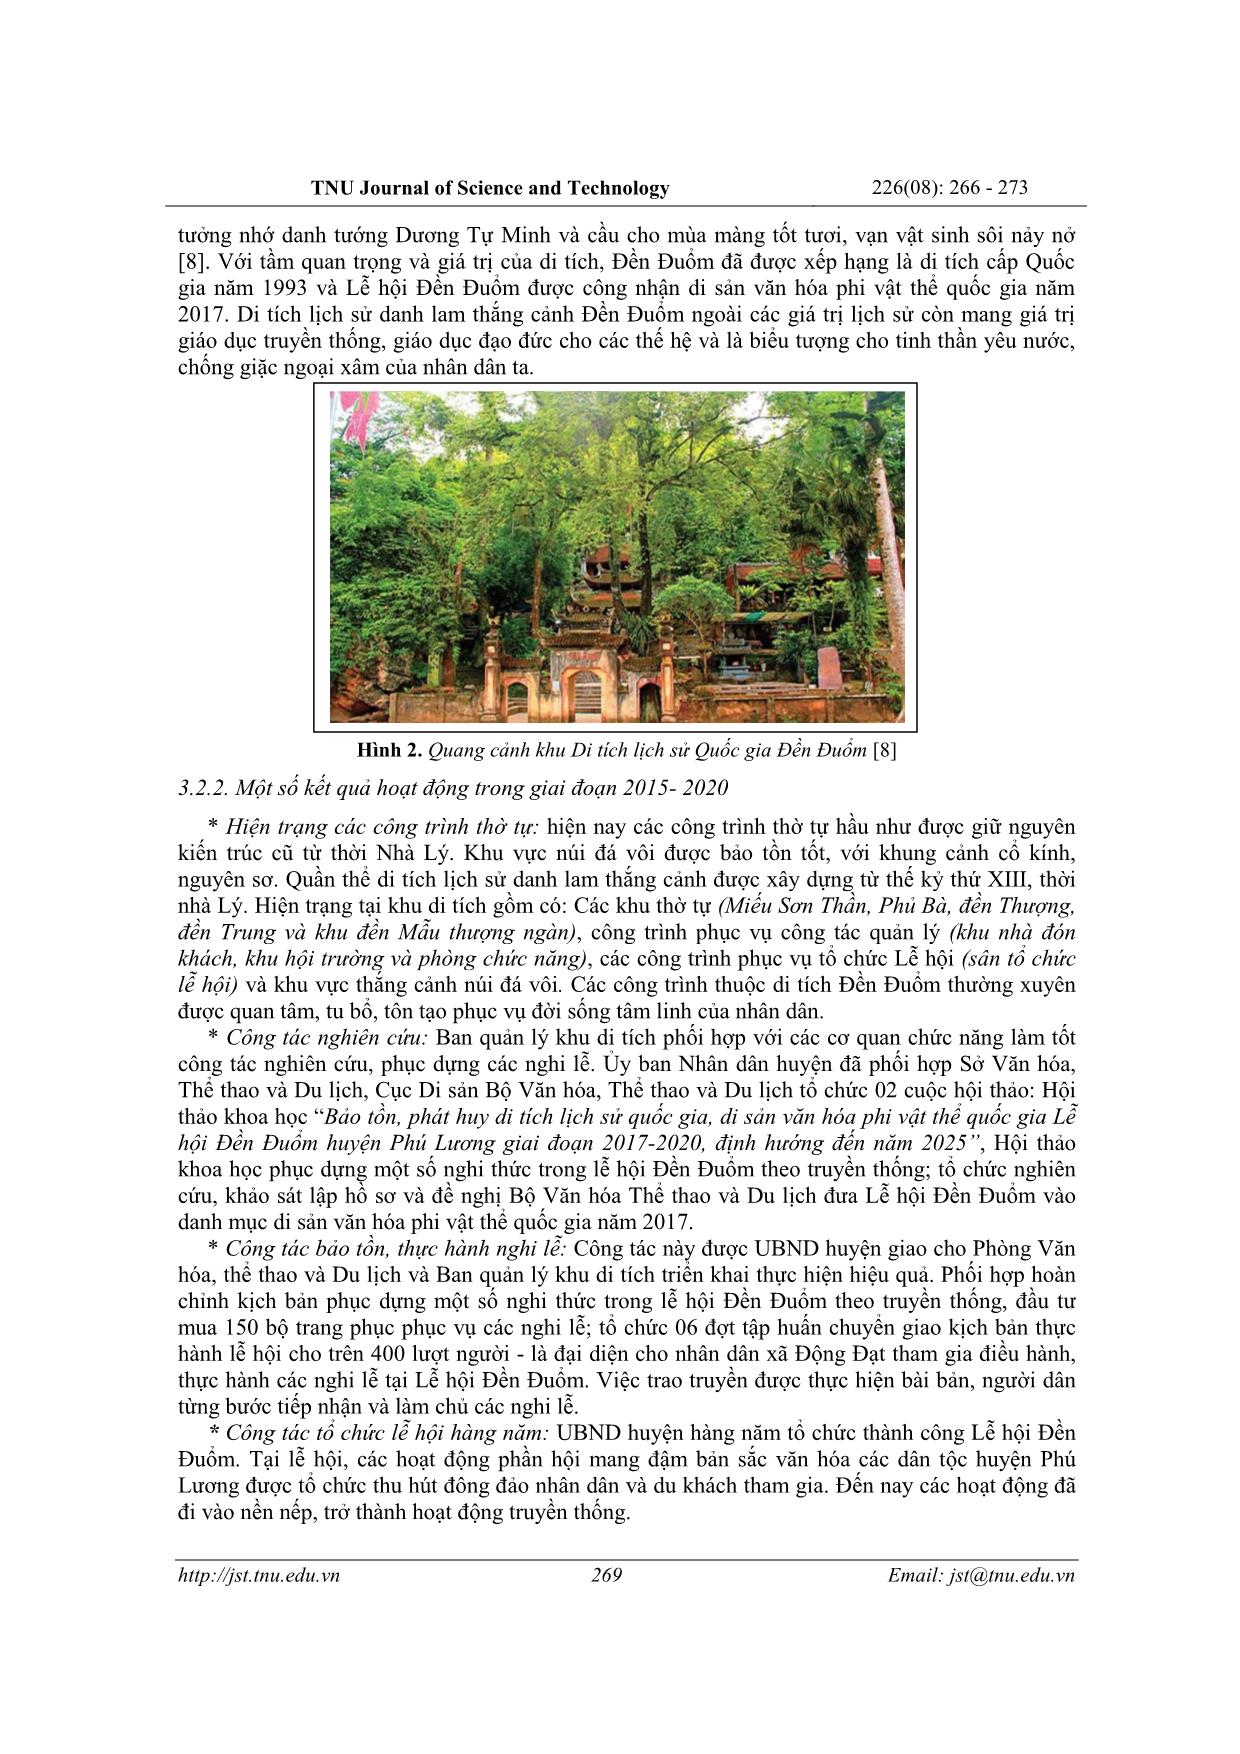 Đánh giá tiềm năng phát triển du lịch sinh thái gắn với khu di tích lịch sử Đền Đuổm, huyện Phú Lương, tỉnh Thái Nguyên trang 4